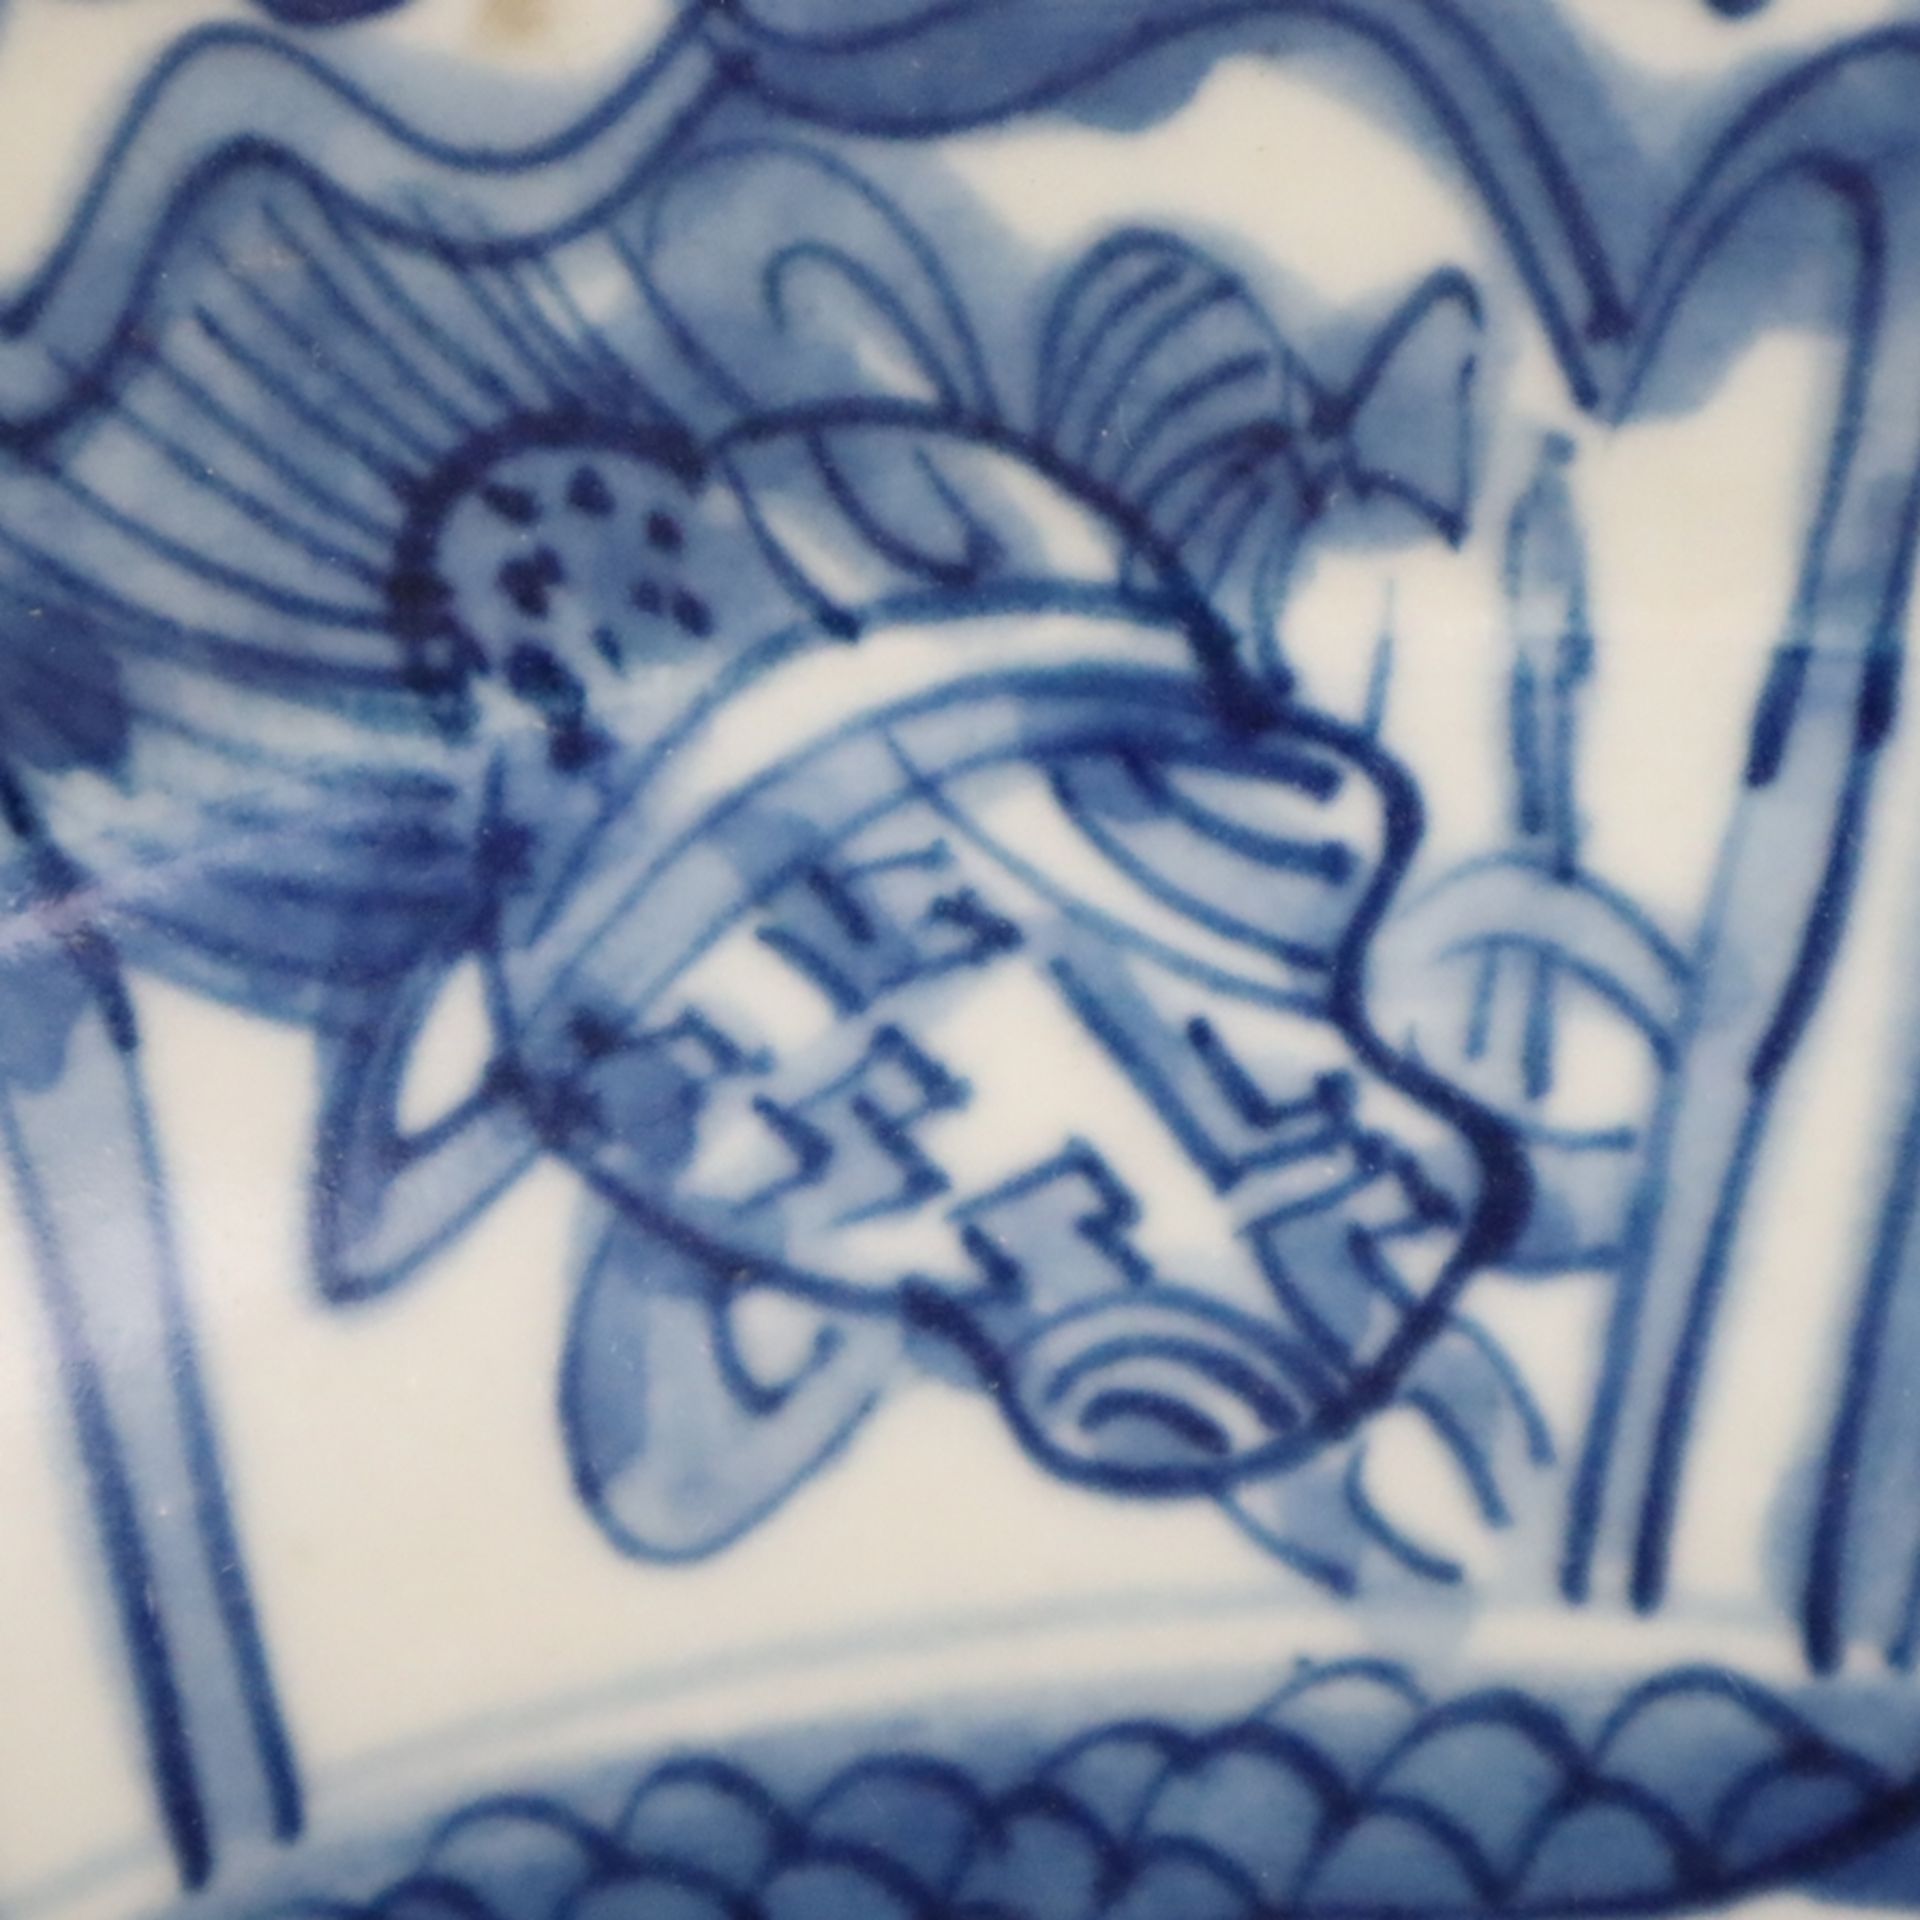 Gemuldeter Teller mit gewelltem Rand - China, Blaumalerei unter Glasur im Wanli-Stil, im Spiegel Te - Image 7 of 9